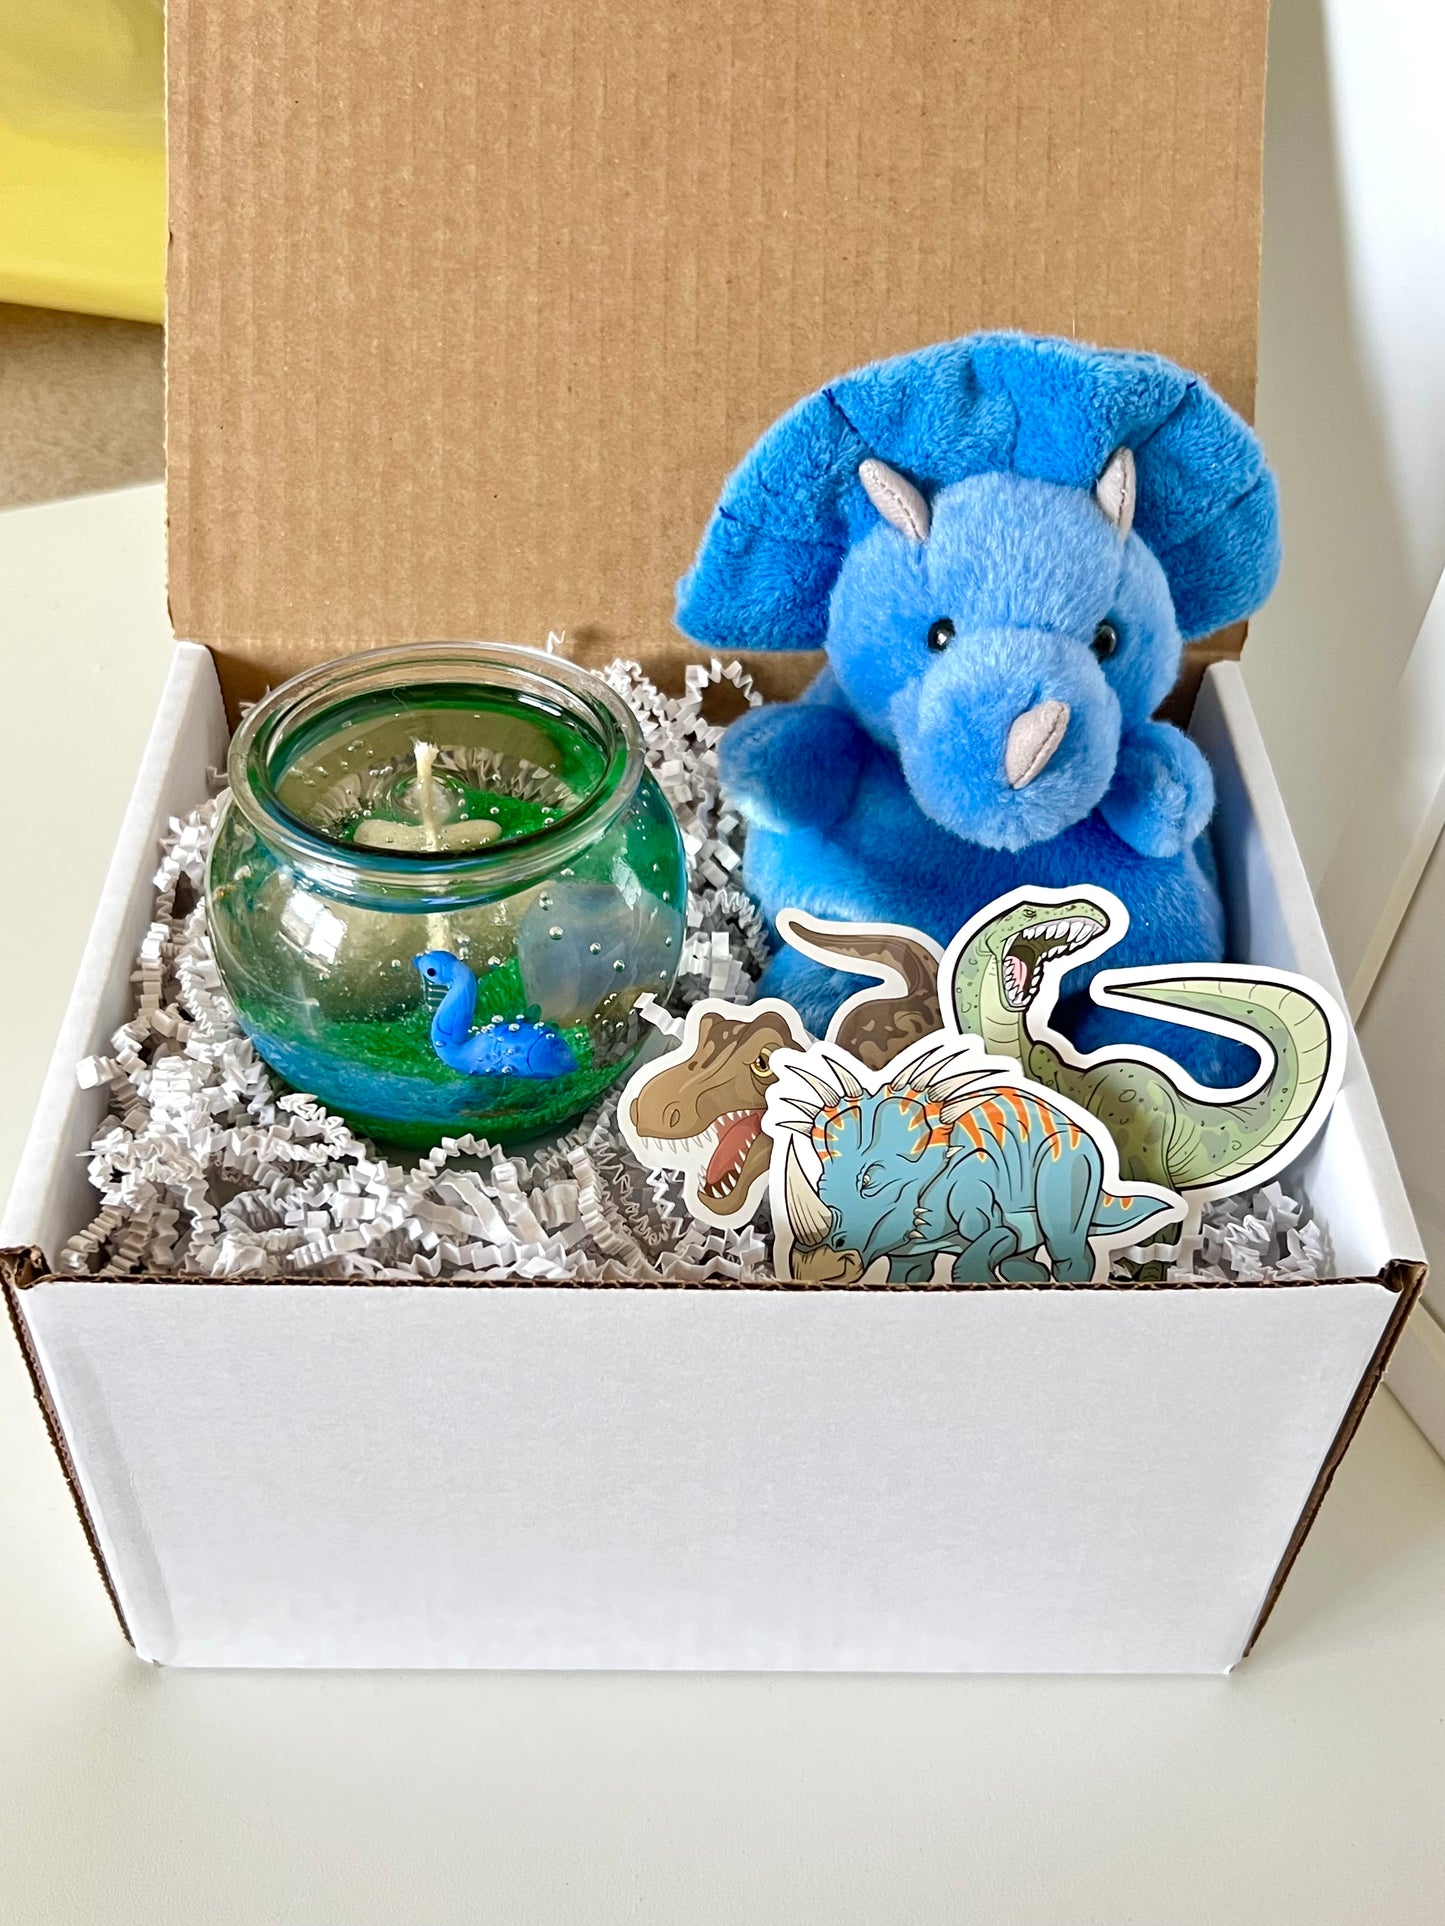 Dinosaur Gift Box